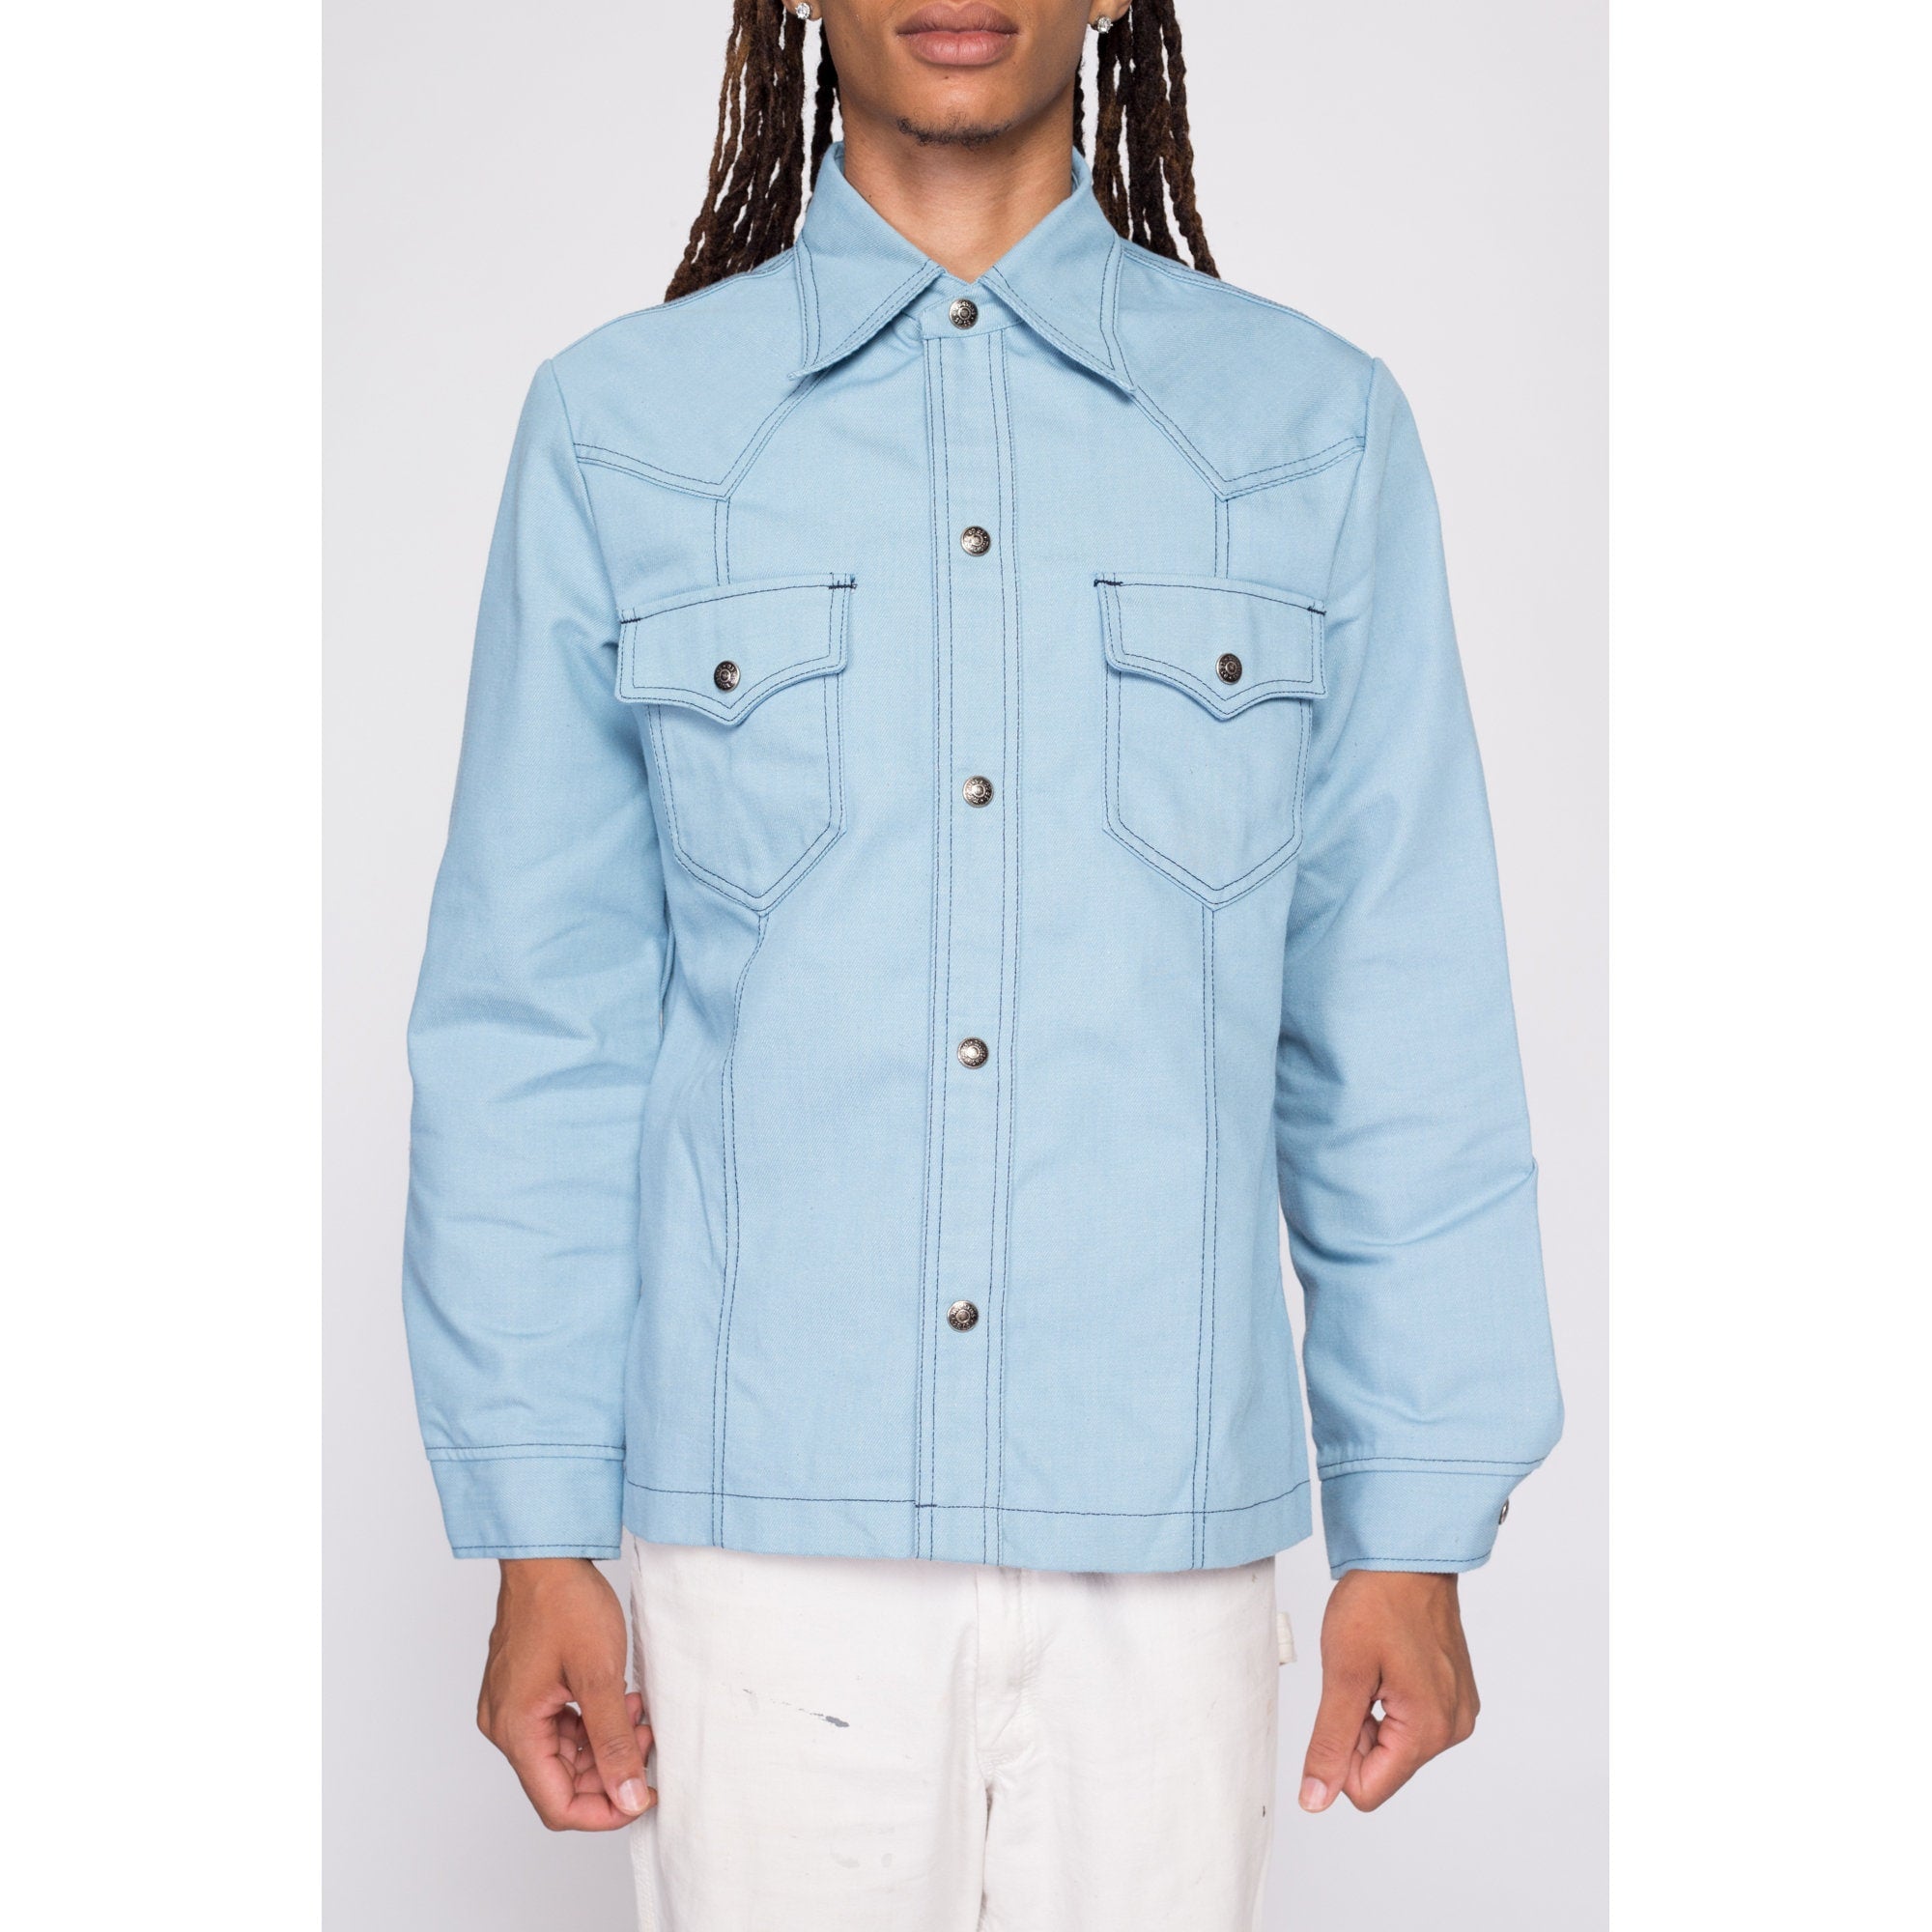 70s Light Blue Shirt Jacket - Men's Medium – Flying Apple Vintage